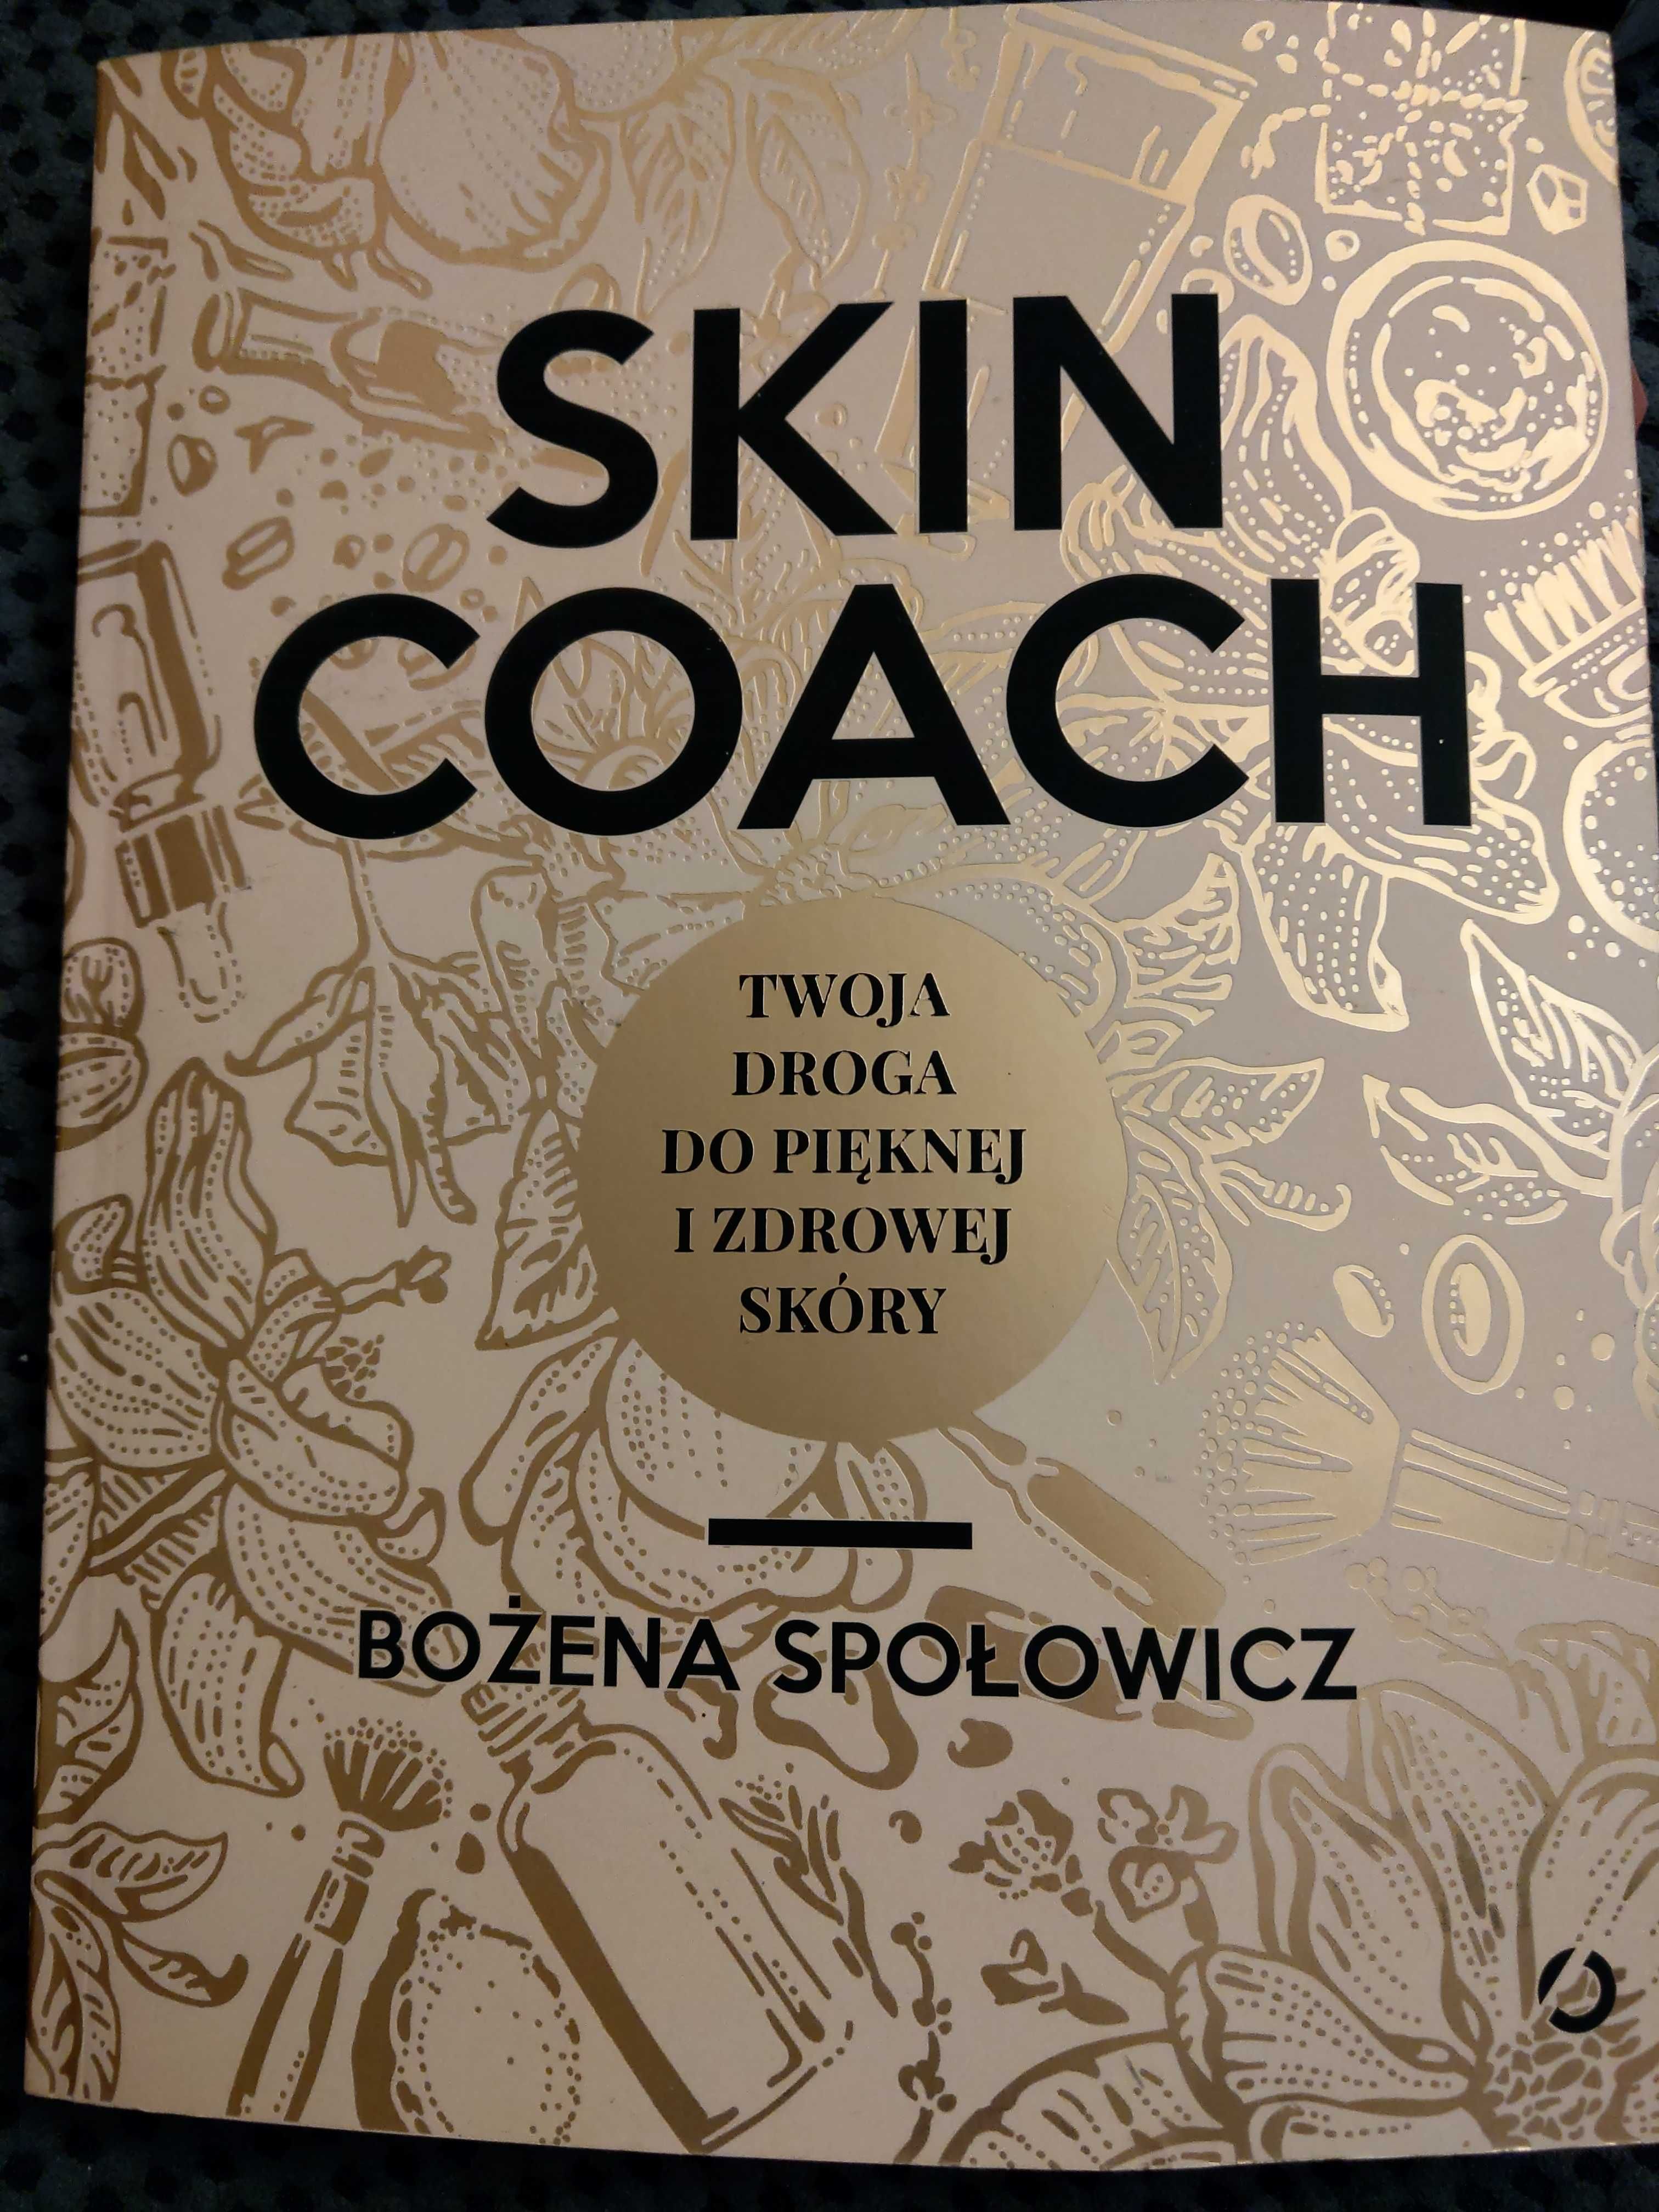 Skin Coach. Bożena Społowicz. Książka, pielęgnacja skóry.